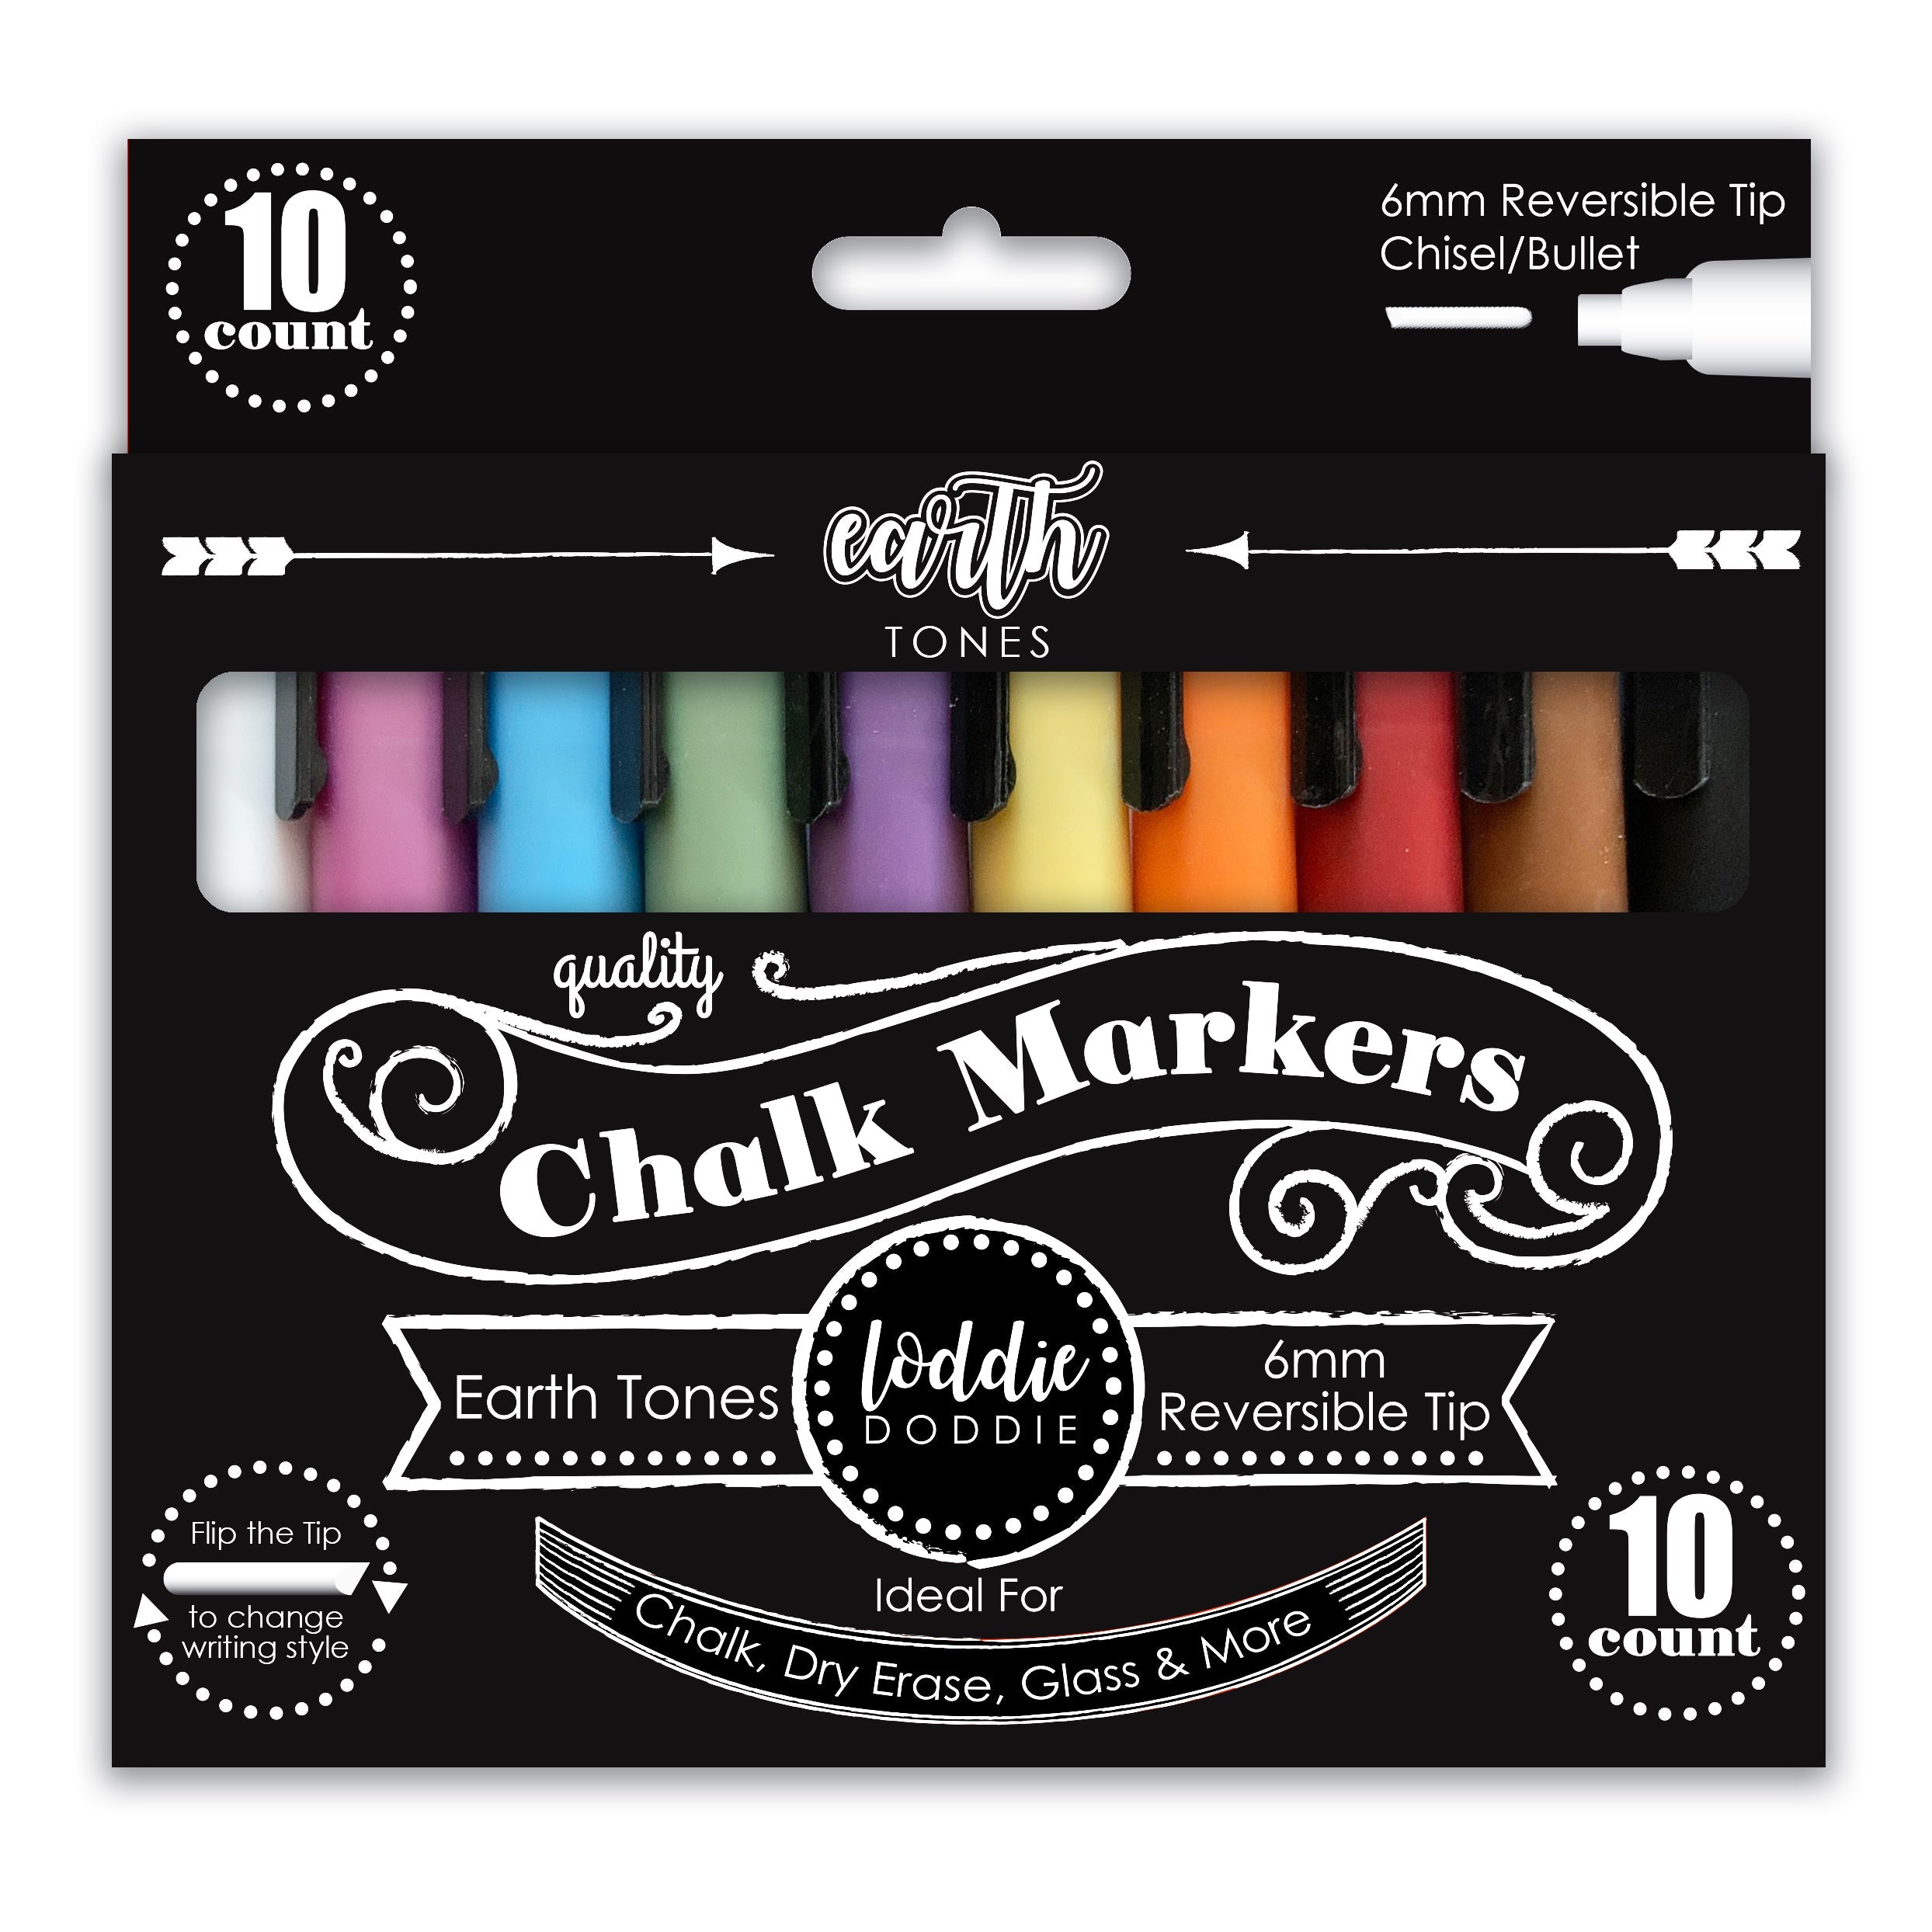 Loddie Doddie, Other, Loddie Doddie Liquid Chalk Markers For Chalkboard  Pens 2 Sets Of 8